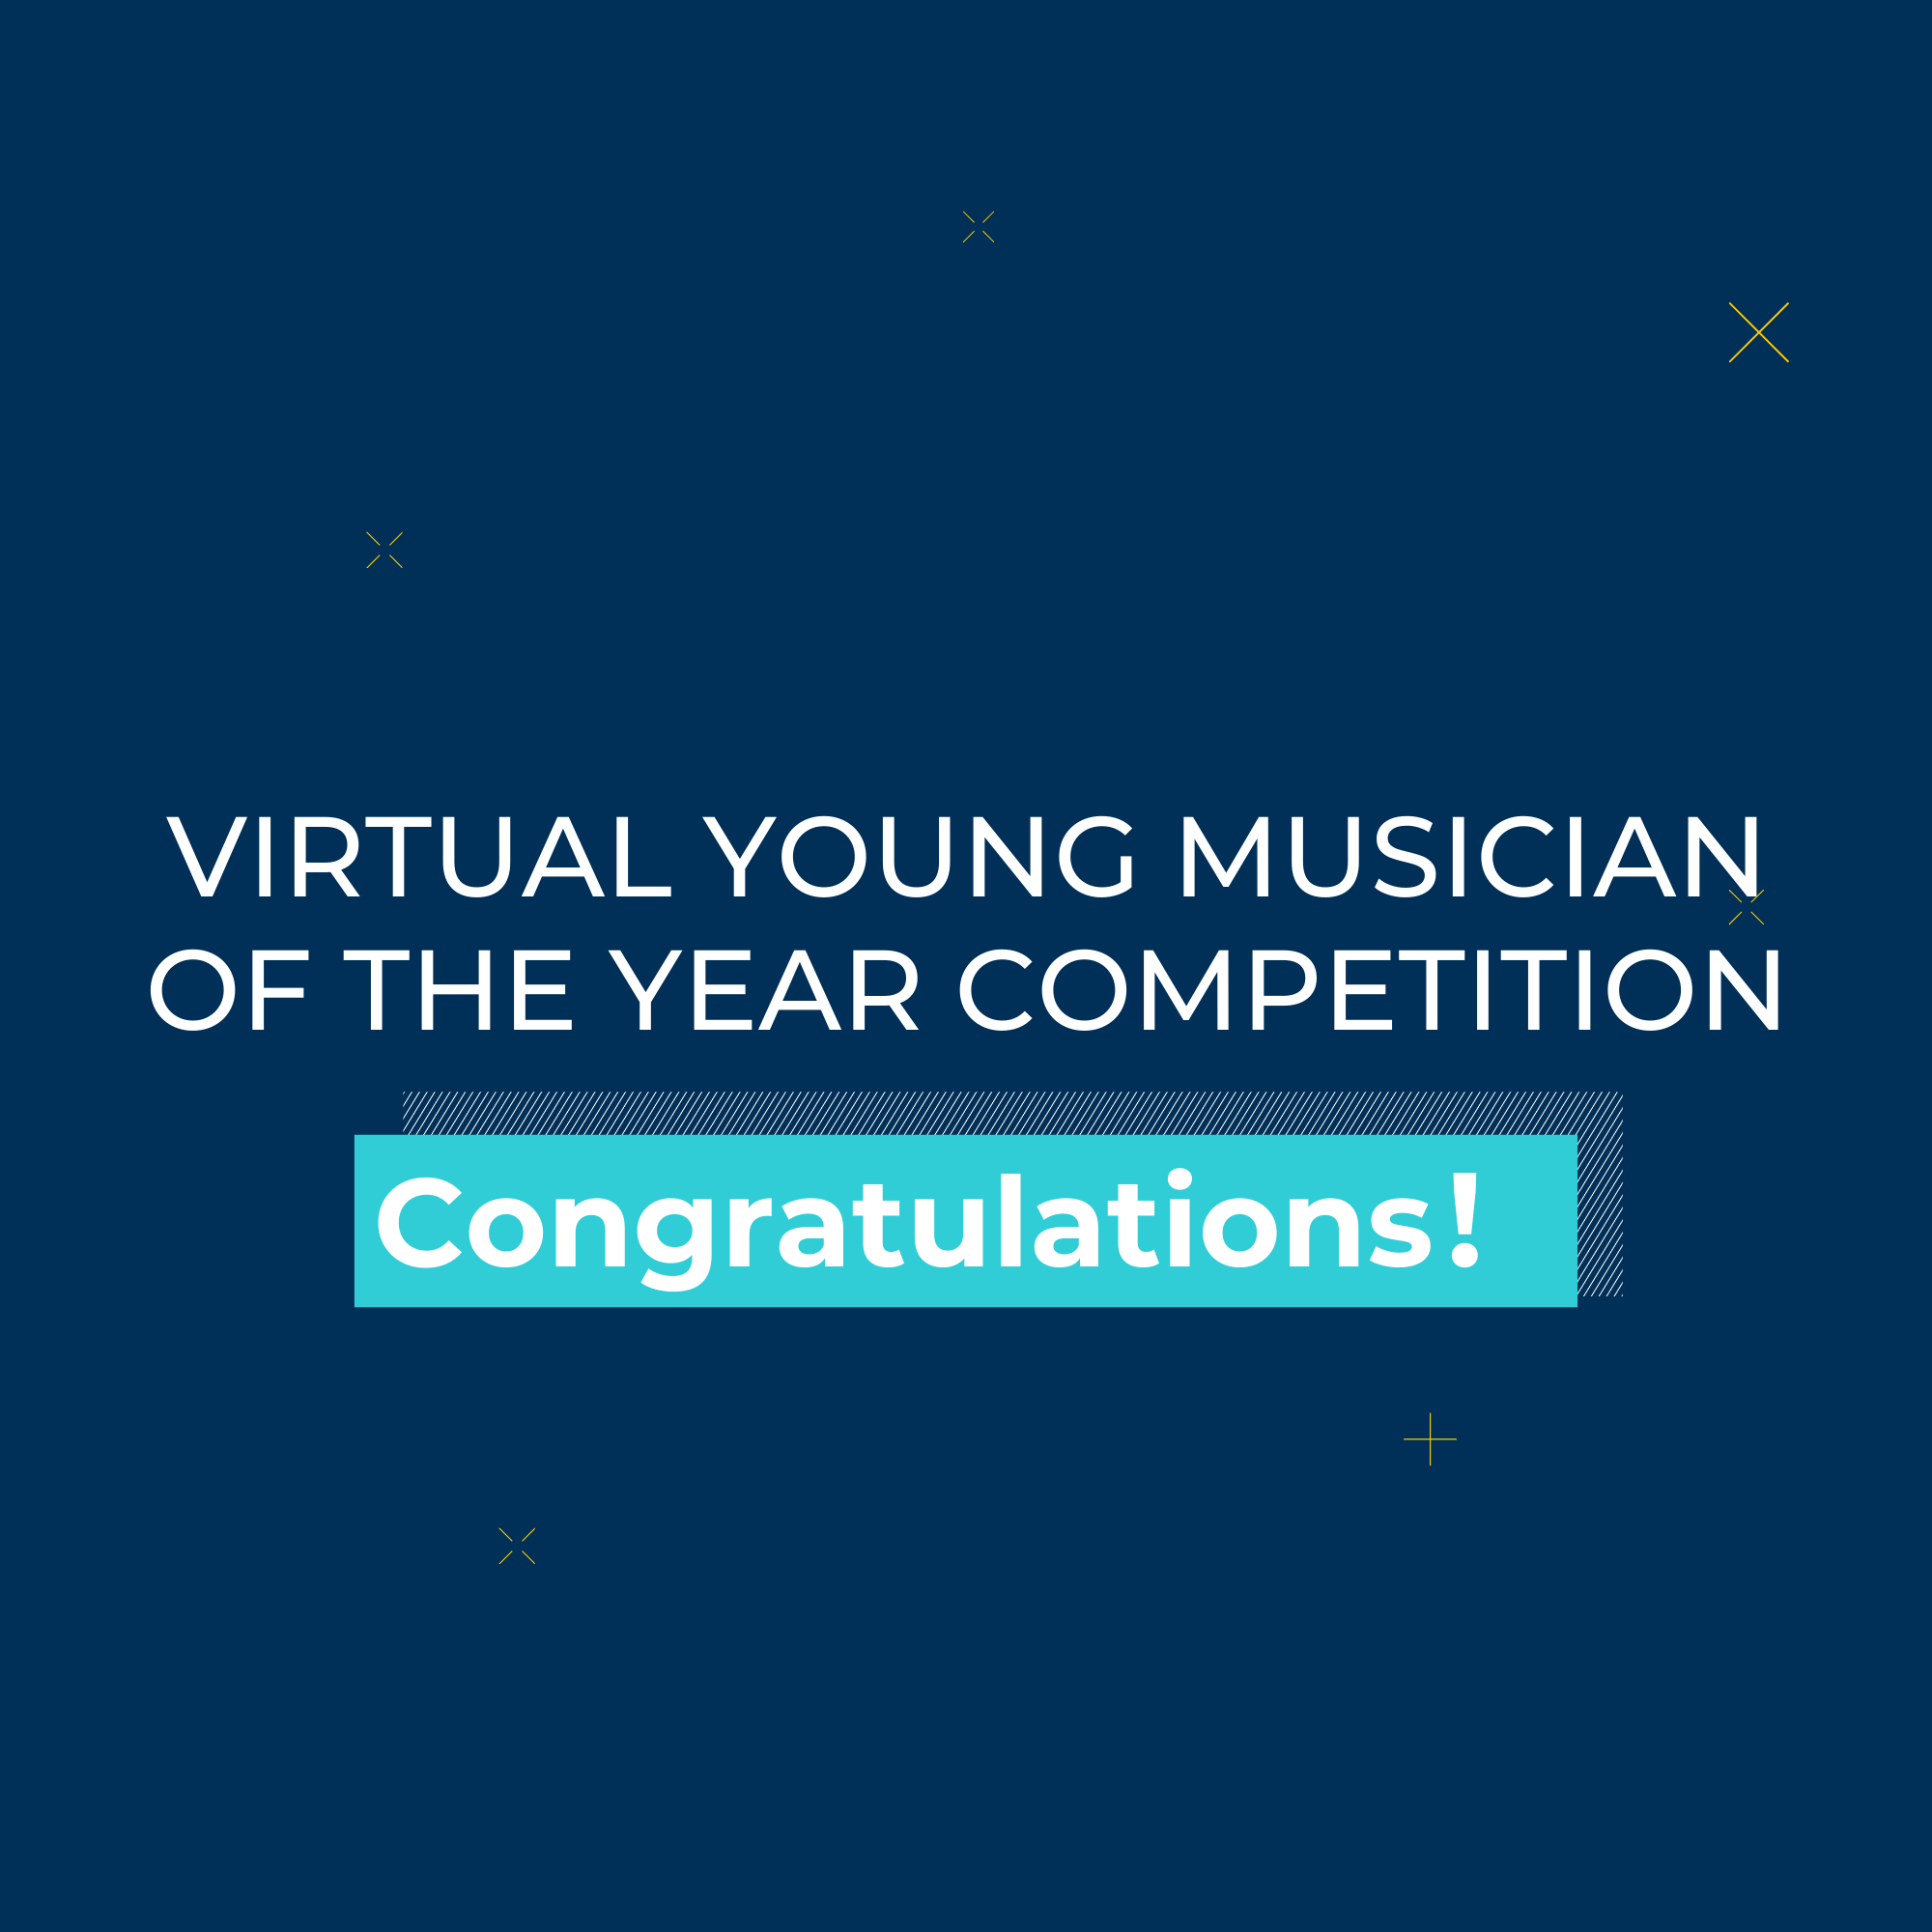 虚拟年度青年音乐家大赛 - The Virtual Young Musician of the Year Competition